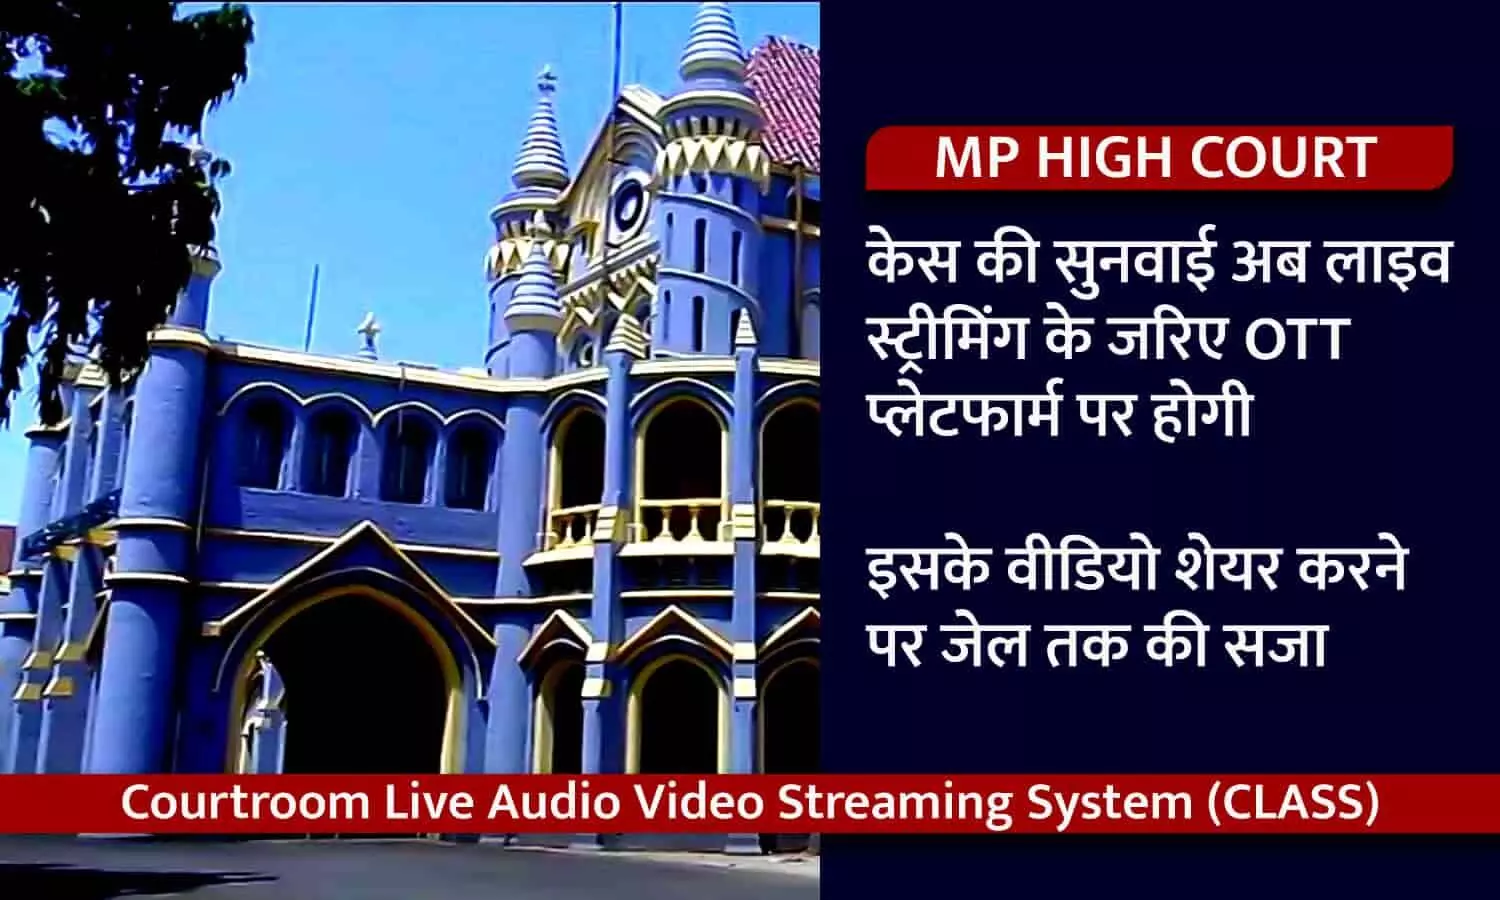 MP HIGH COURT: केस की सुनवाई अब लाइव स्ट्रीमिंग के जरिए OTT प्लेटफार्म पर होगी, इसके वीडियो डाउनलोड और शेयर करने पर जेल तक की सजा